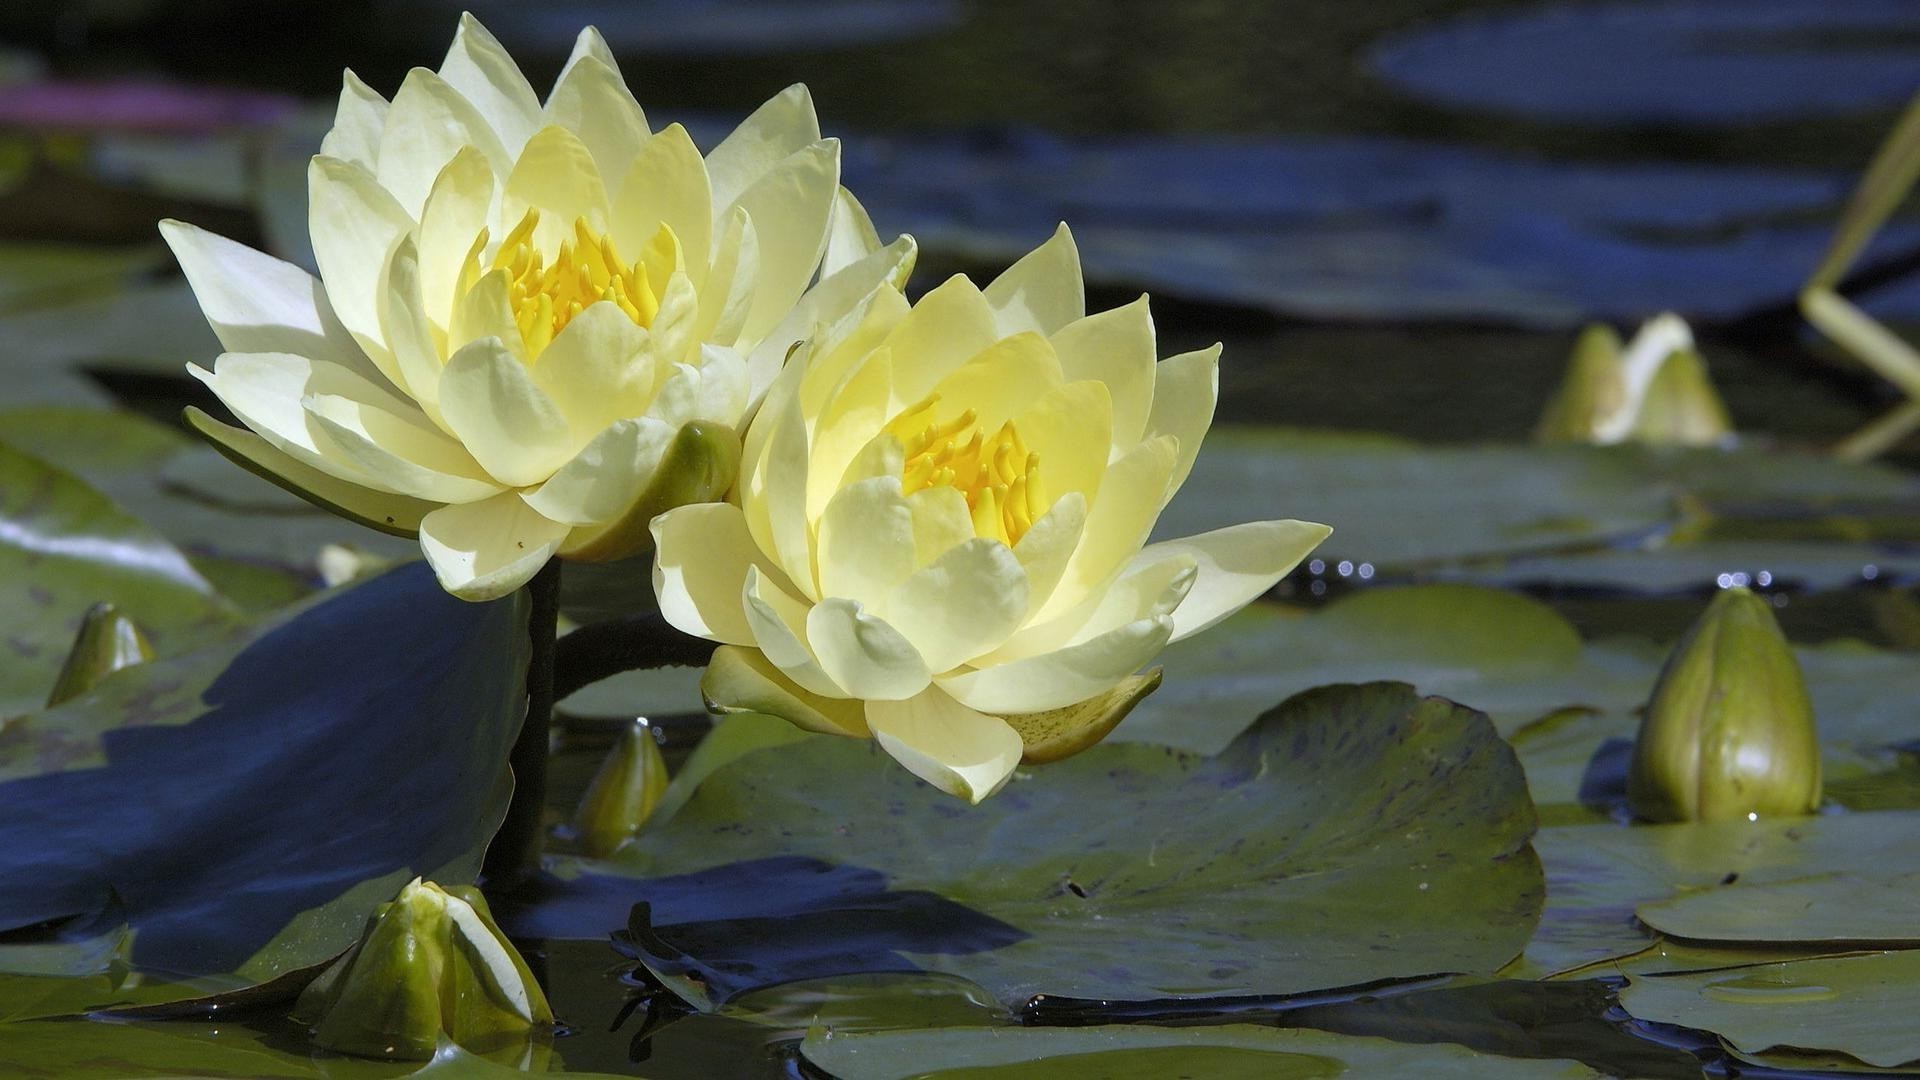 цветы в воде лотос бассейн цветок лили лист природа блюминг флора кувшинка сад лепесток плавание водный лето дзен медитация парк цветочные красивые